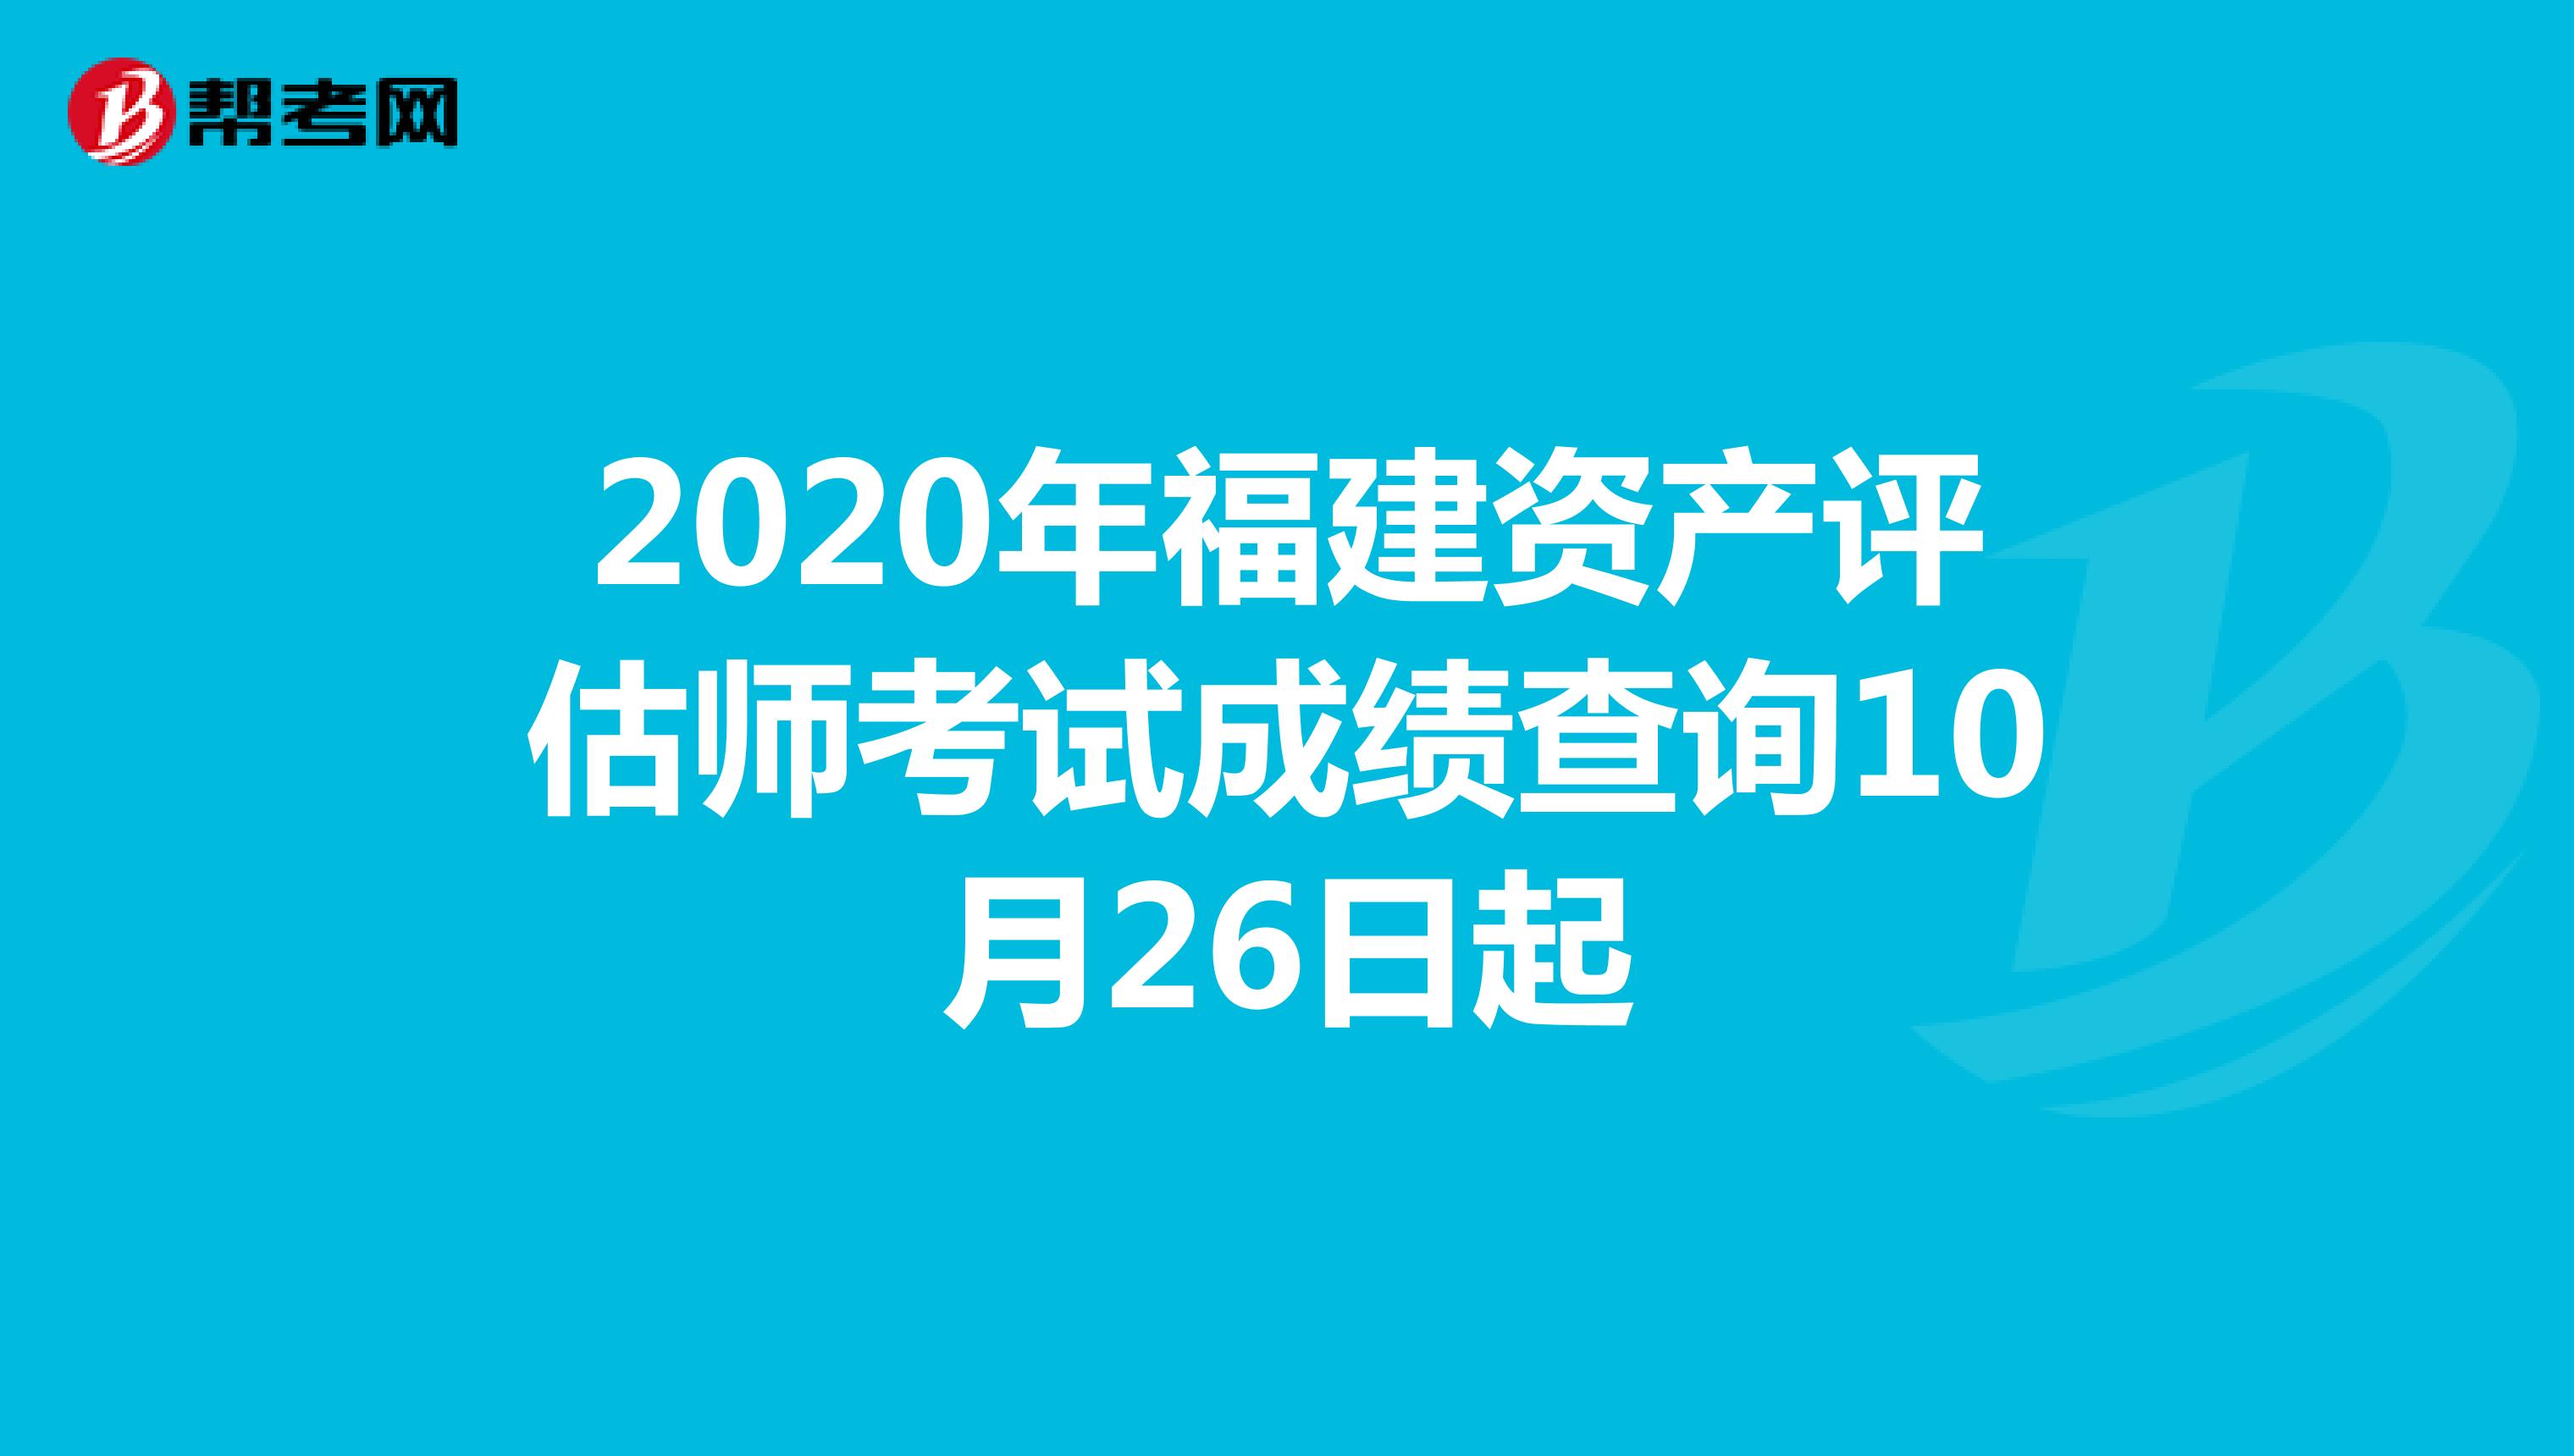 2020年福建资产评估师考试成绩查询10月26日起